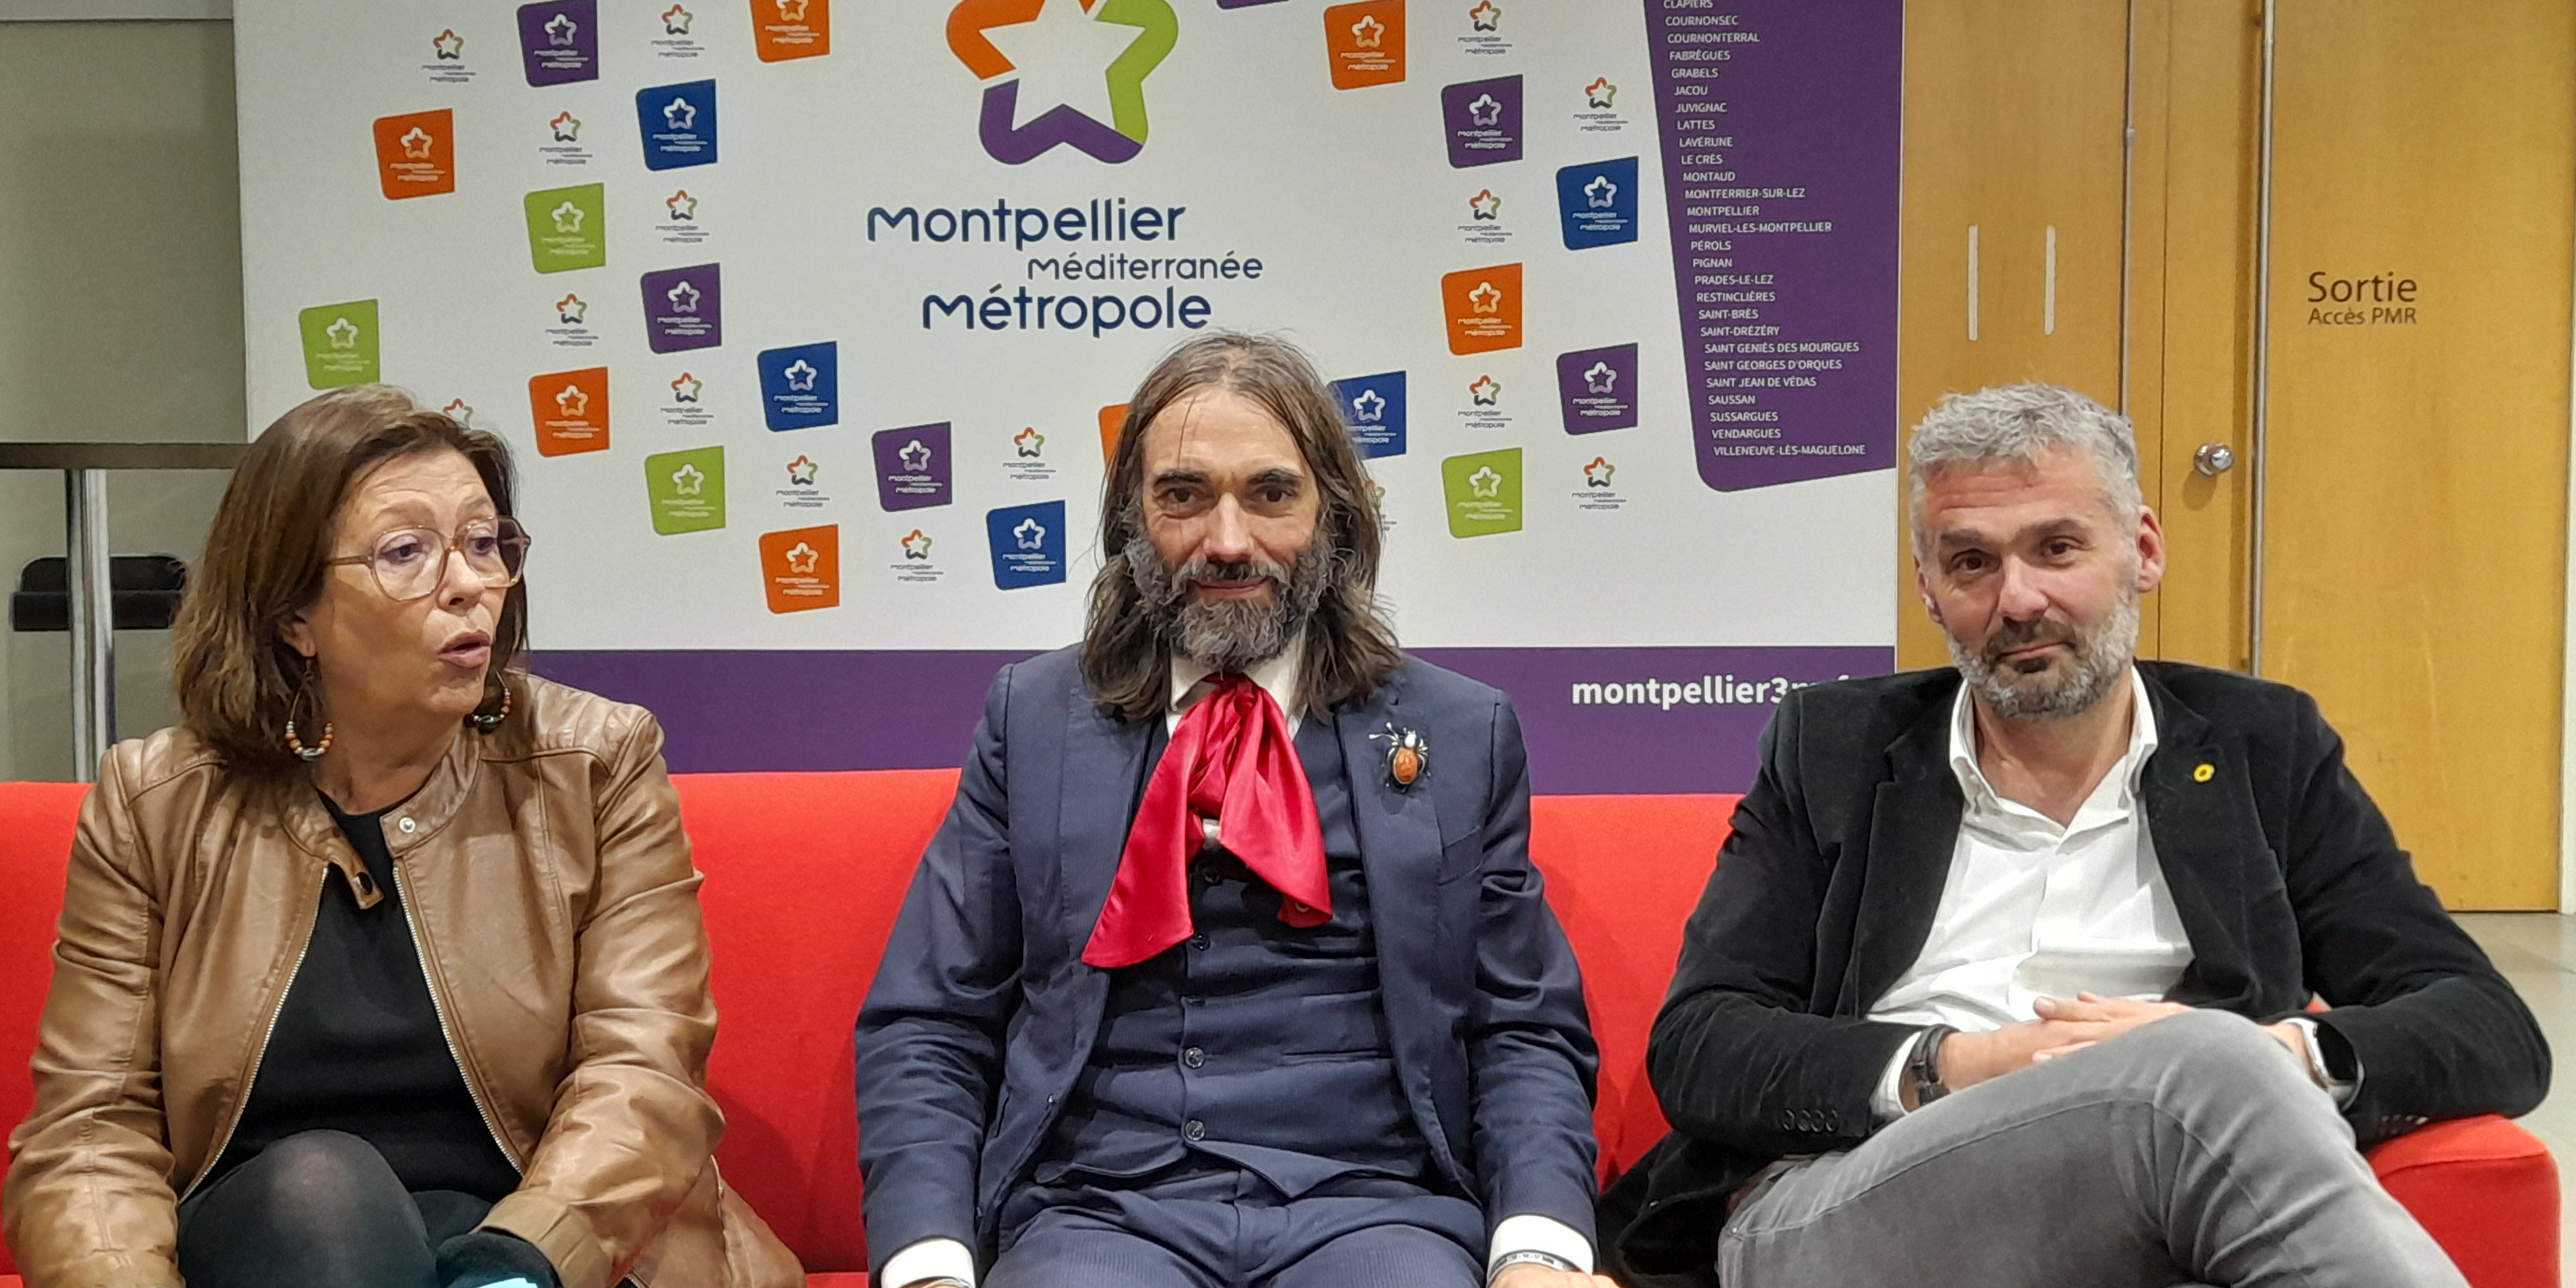 Montpellier lance la 1ère convention citoyenne sur l'IA en France : « Je suis là dans un rôle de dealer d'informations » (Cédric Villani)